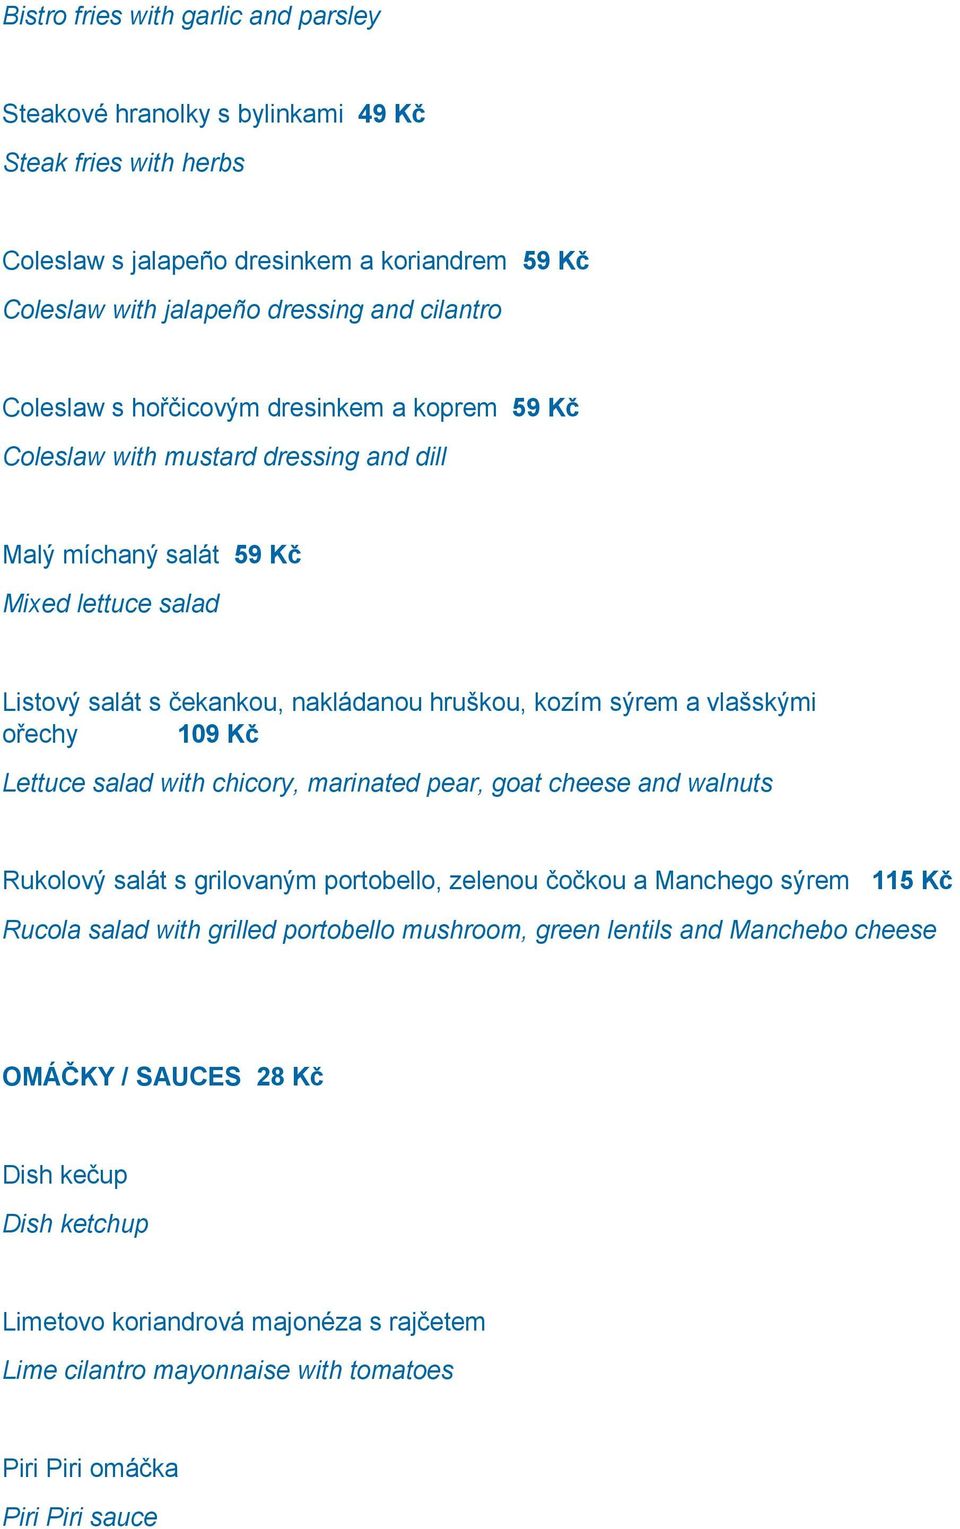 vlašskými ořechy 109 Kč Lettuce salad with chicory, marinated pear, goat cheese and walnuts Rukolový salát s grilovaným portobello, zelenou čočkou a Manchego sýrem 115 Kč Rucola salad with grilled